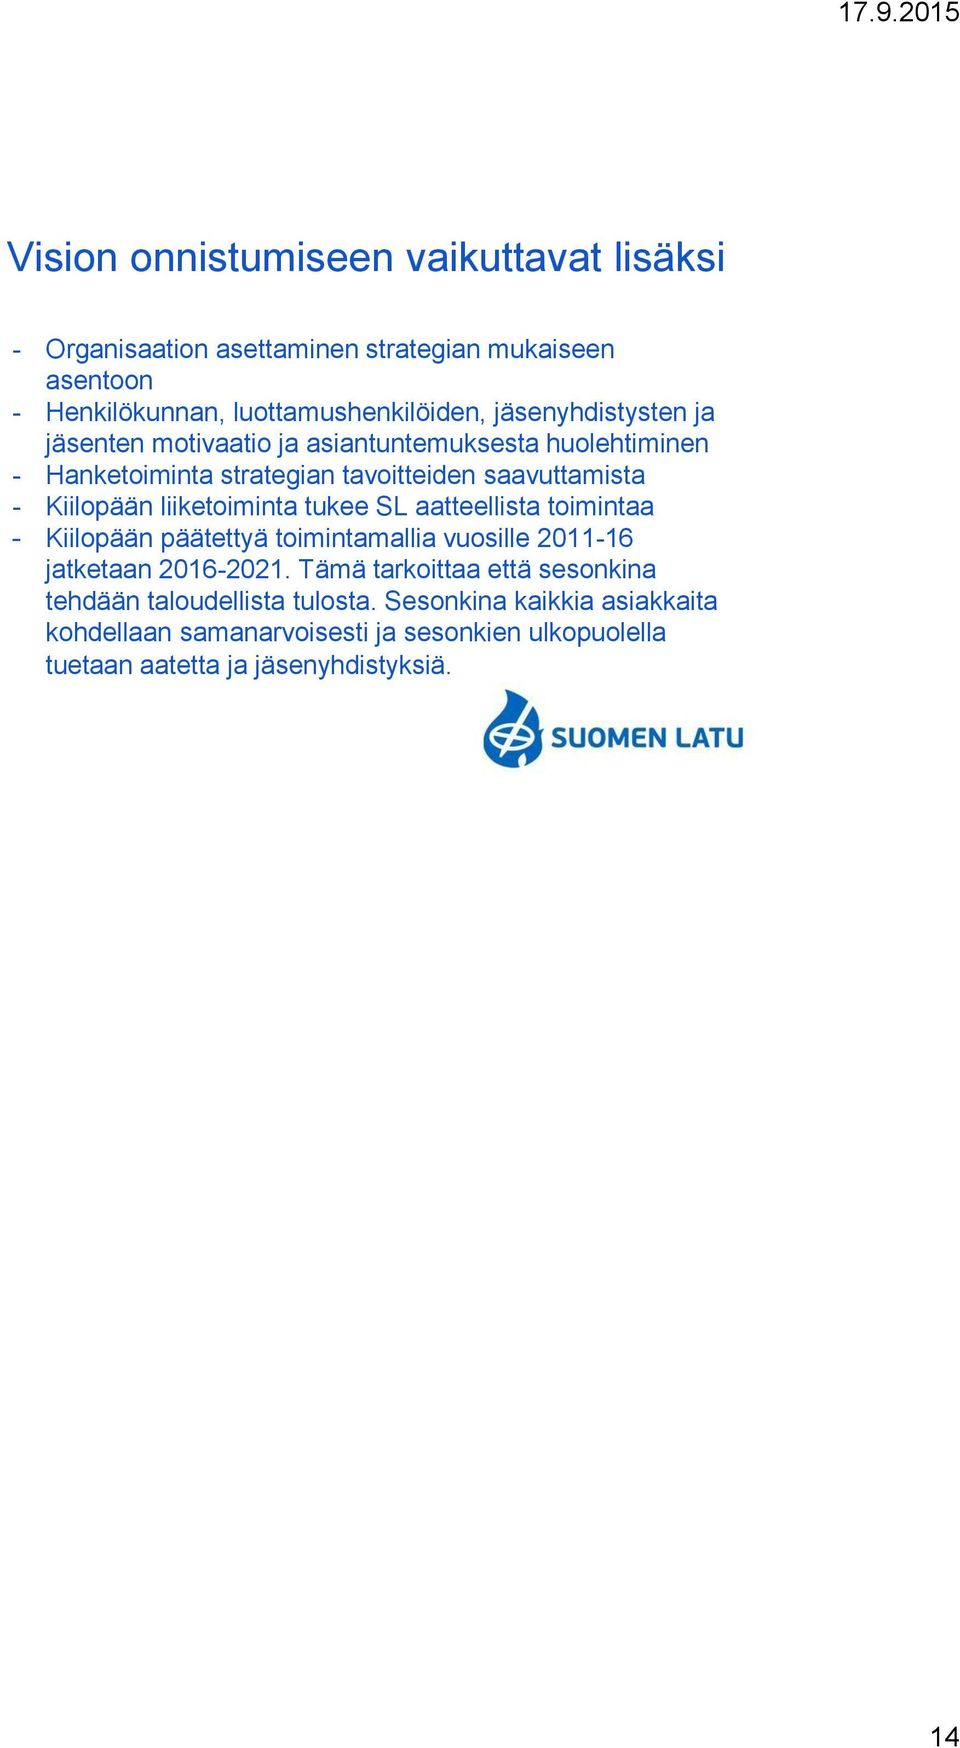 liiketoiminta tukee SL aatteellista toimintaa - Kiilopään päätettyä toimintamallia vuosille 2011-16 jatketaan 2016-2021.